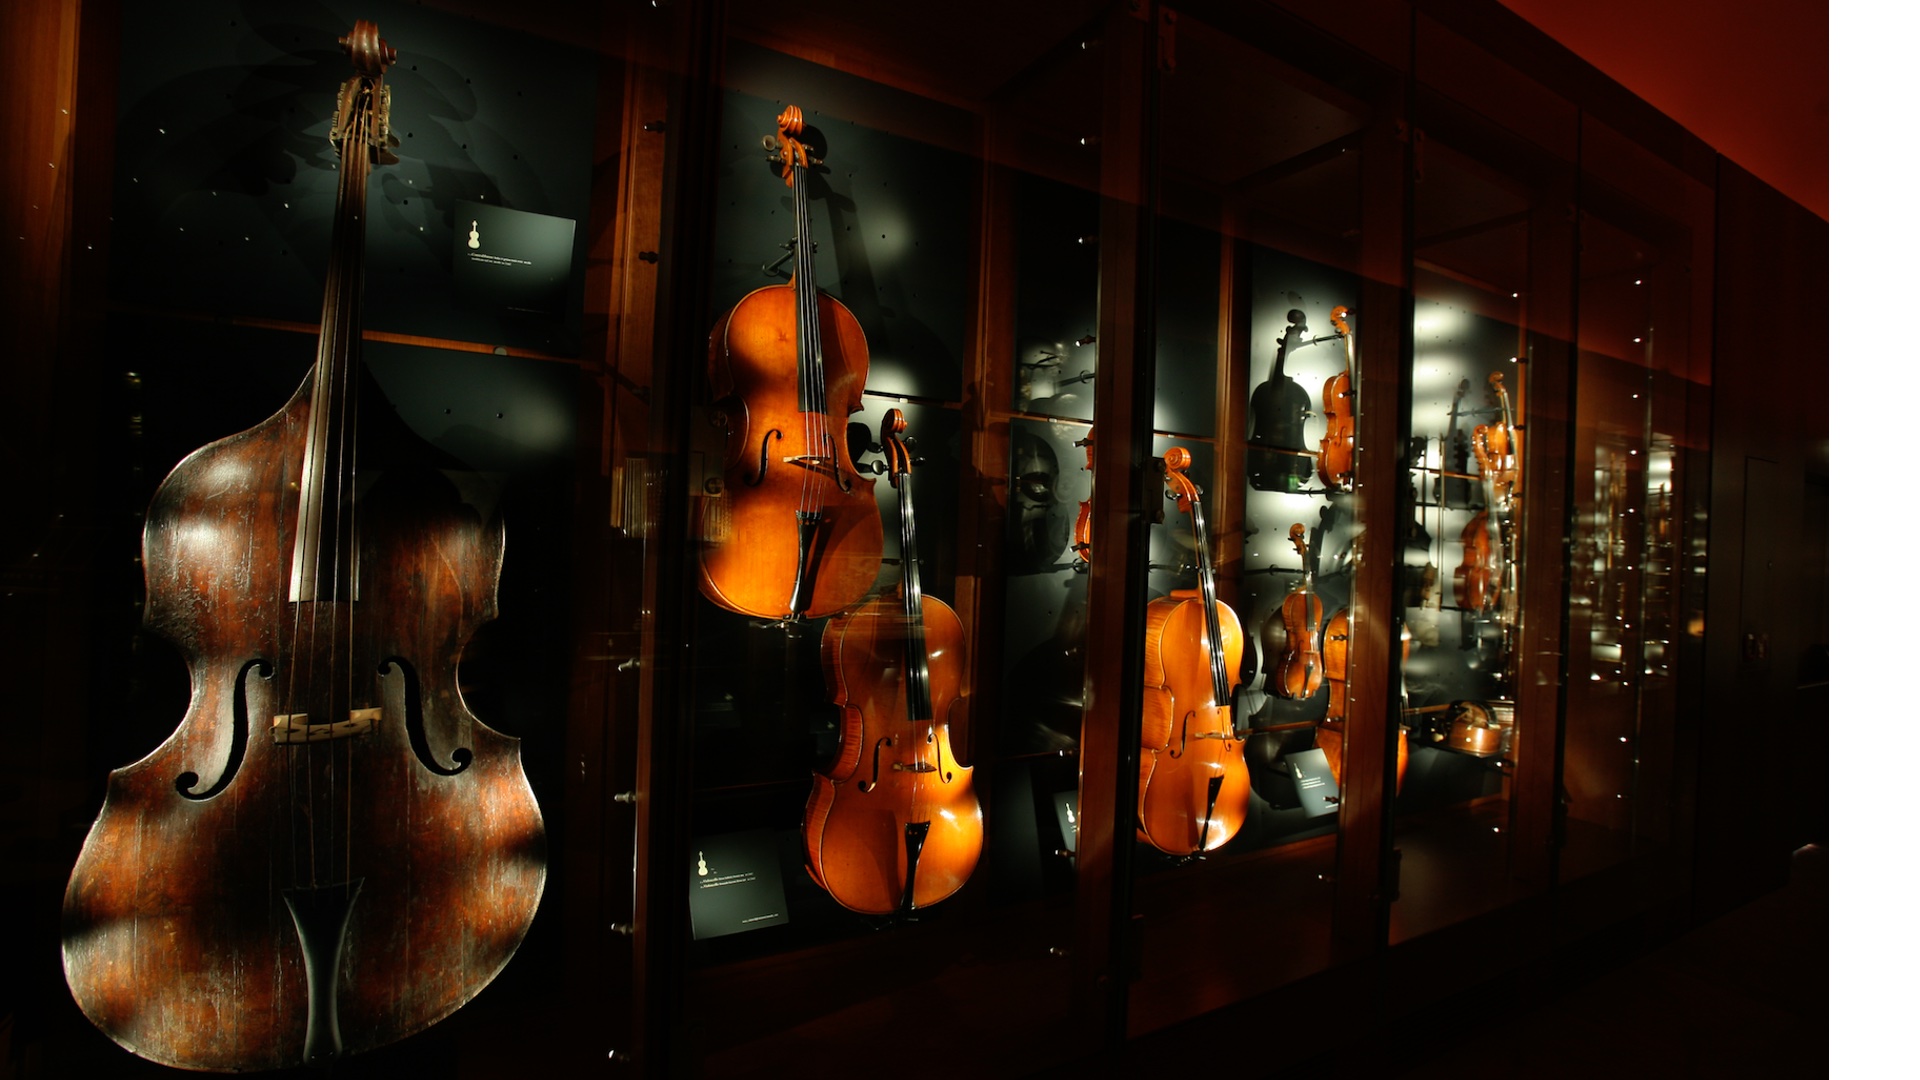 MUSA Museo degli Strumenti Musicali dell'Accademia Nazionale di Santa Cecilia Foto sito ufficiale museo